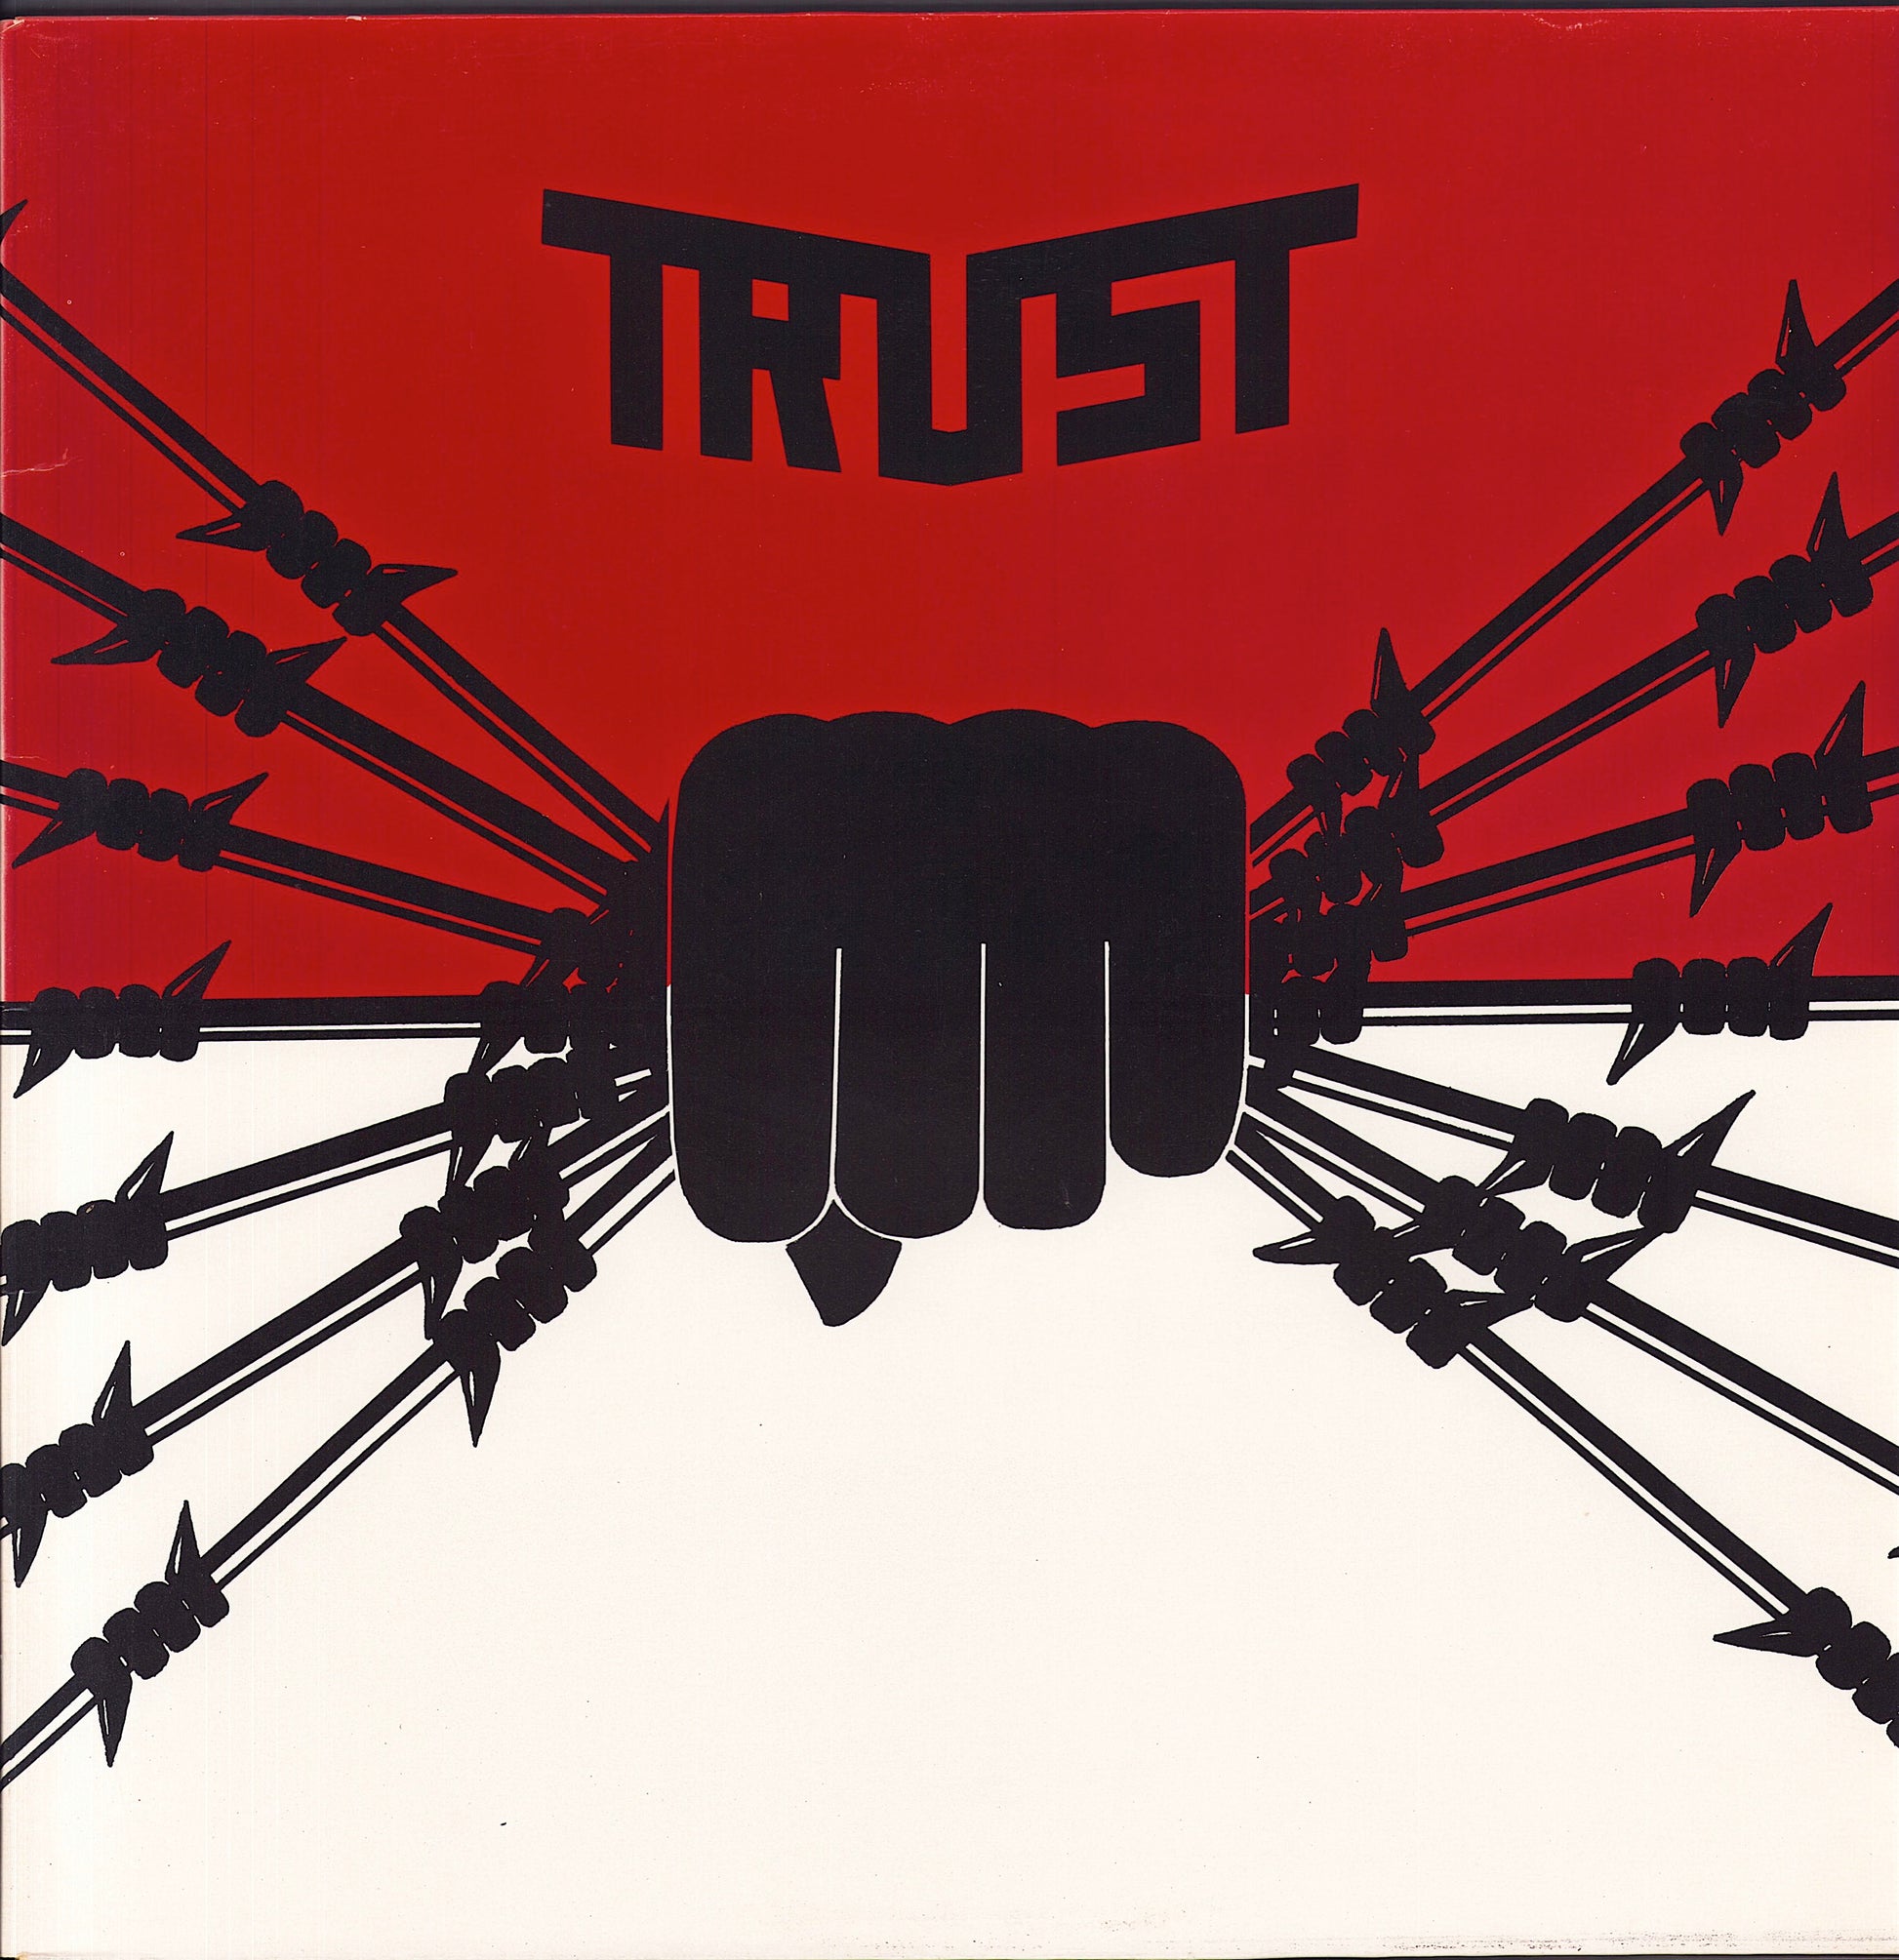 Trust - Idéal Vinyl LP